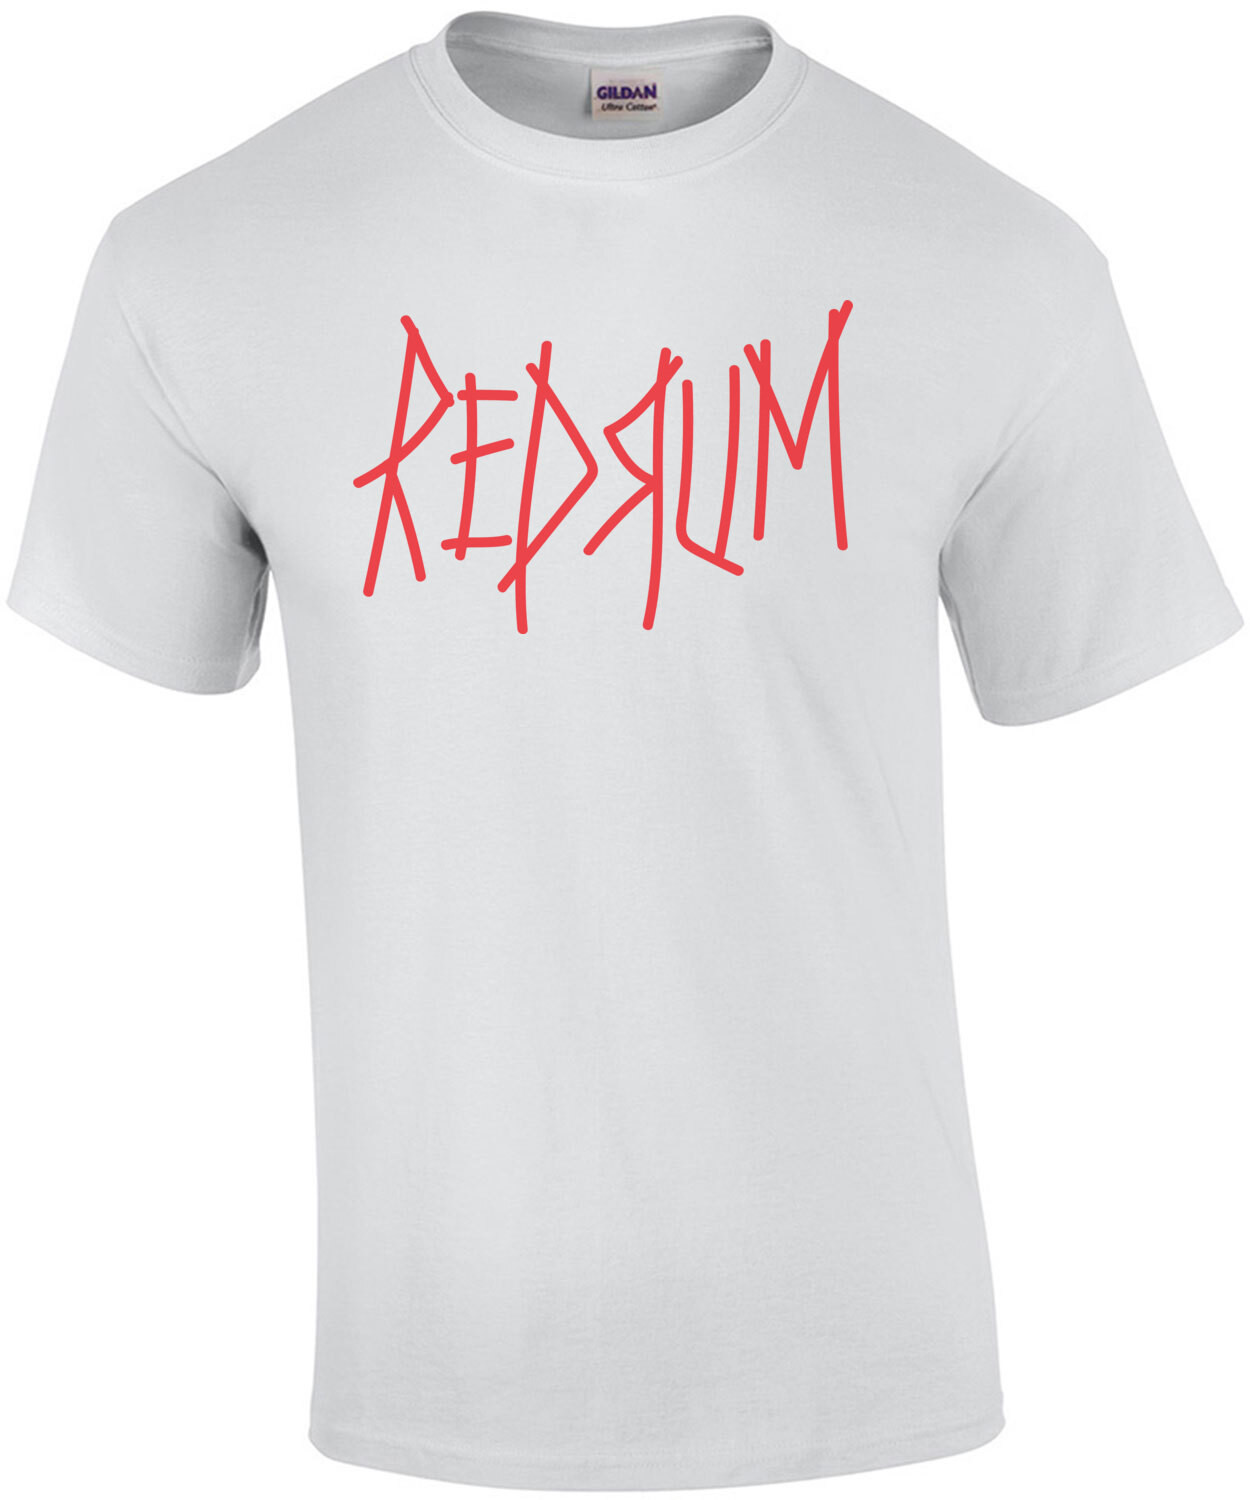 REDRUM - The Shining - 80's T-Shirt